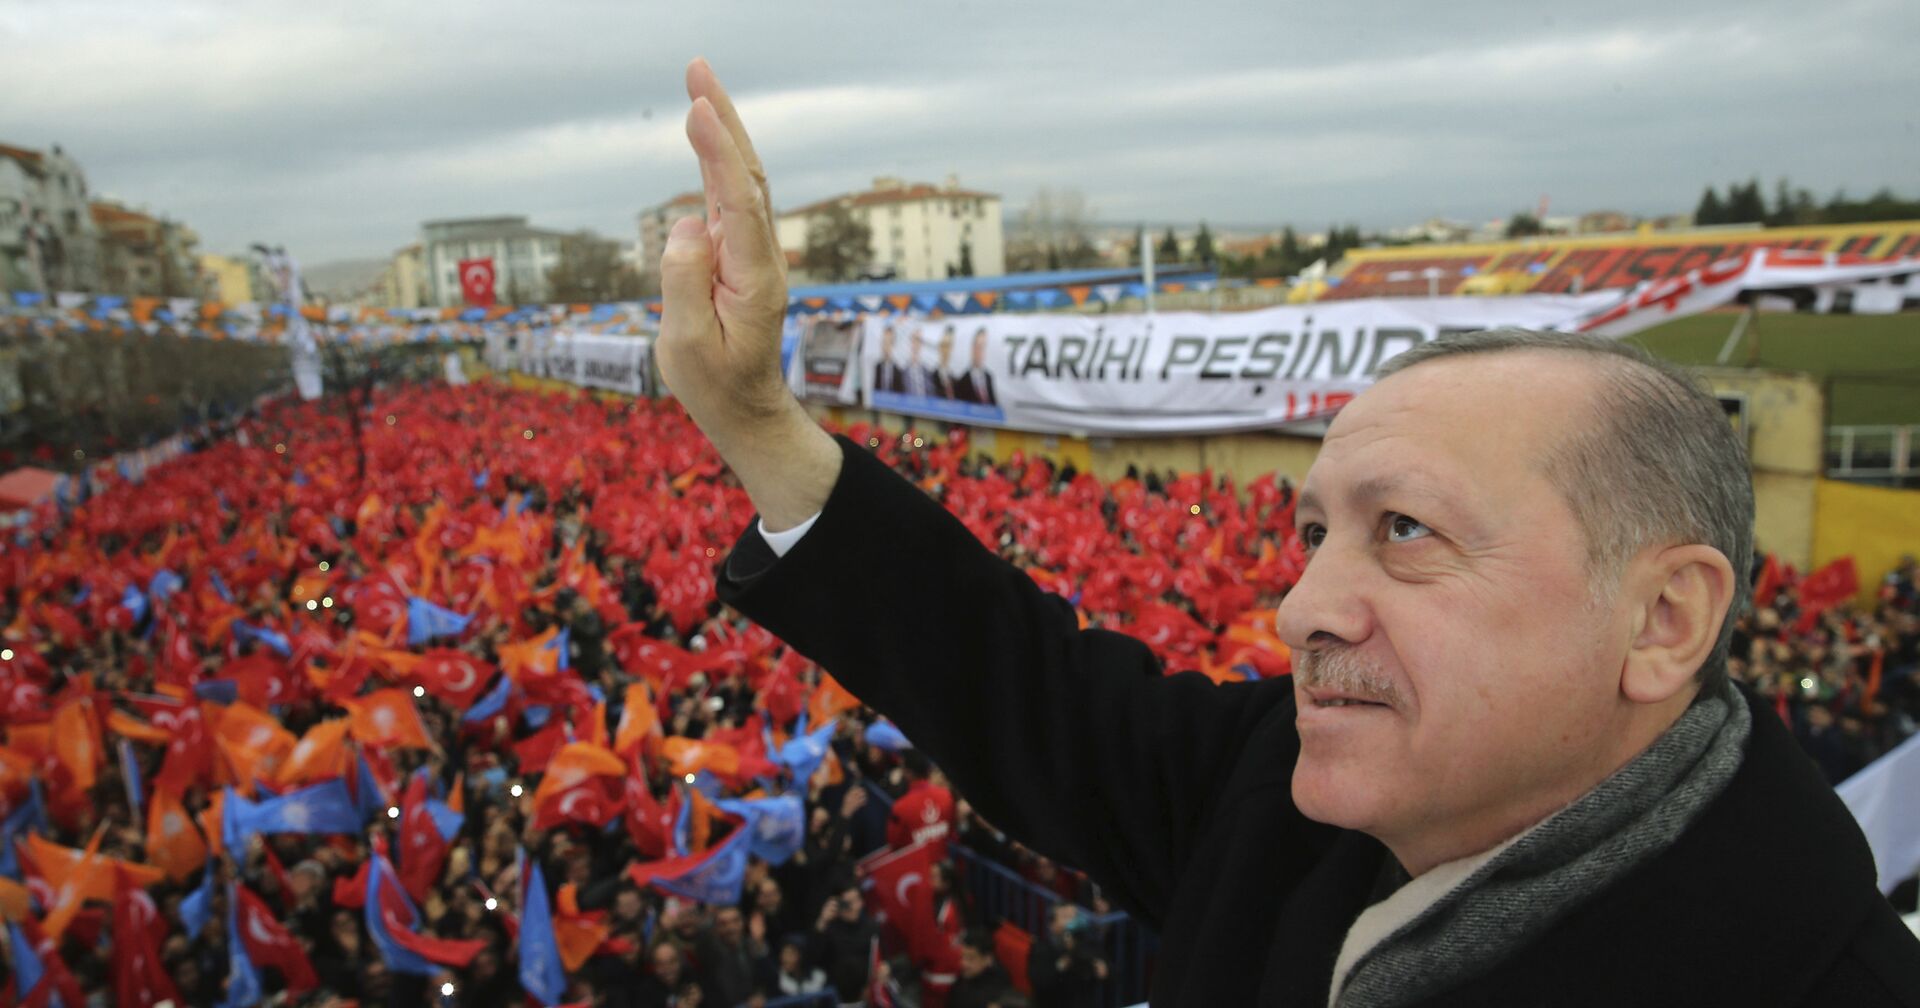 Президент Турции Реджеп Тайип Эрдоган во время обращения к своим сторонникам в Усаке в западной Турции. 20 января 2018 - ИноСМИ, 1920, 24.08.2021